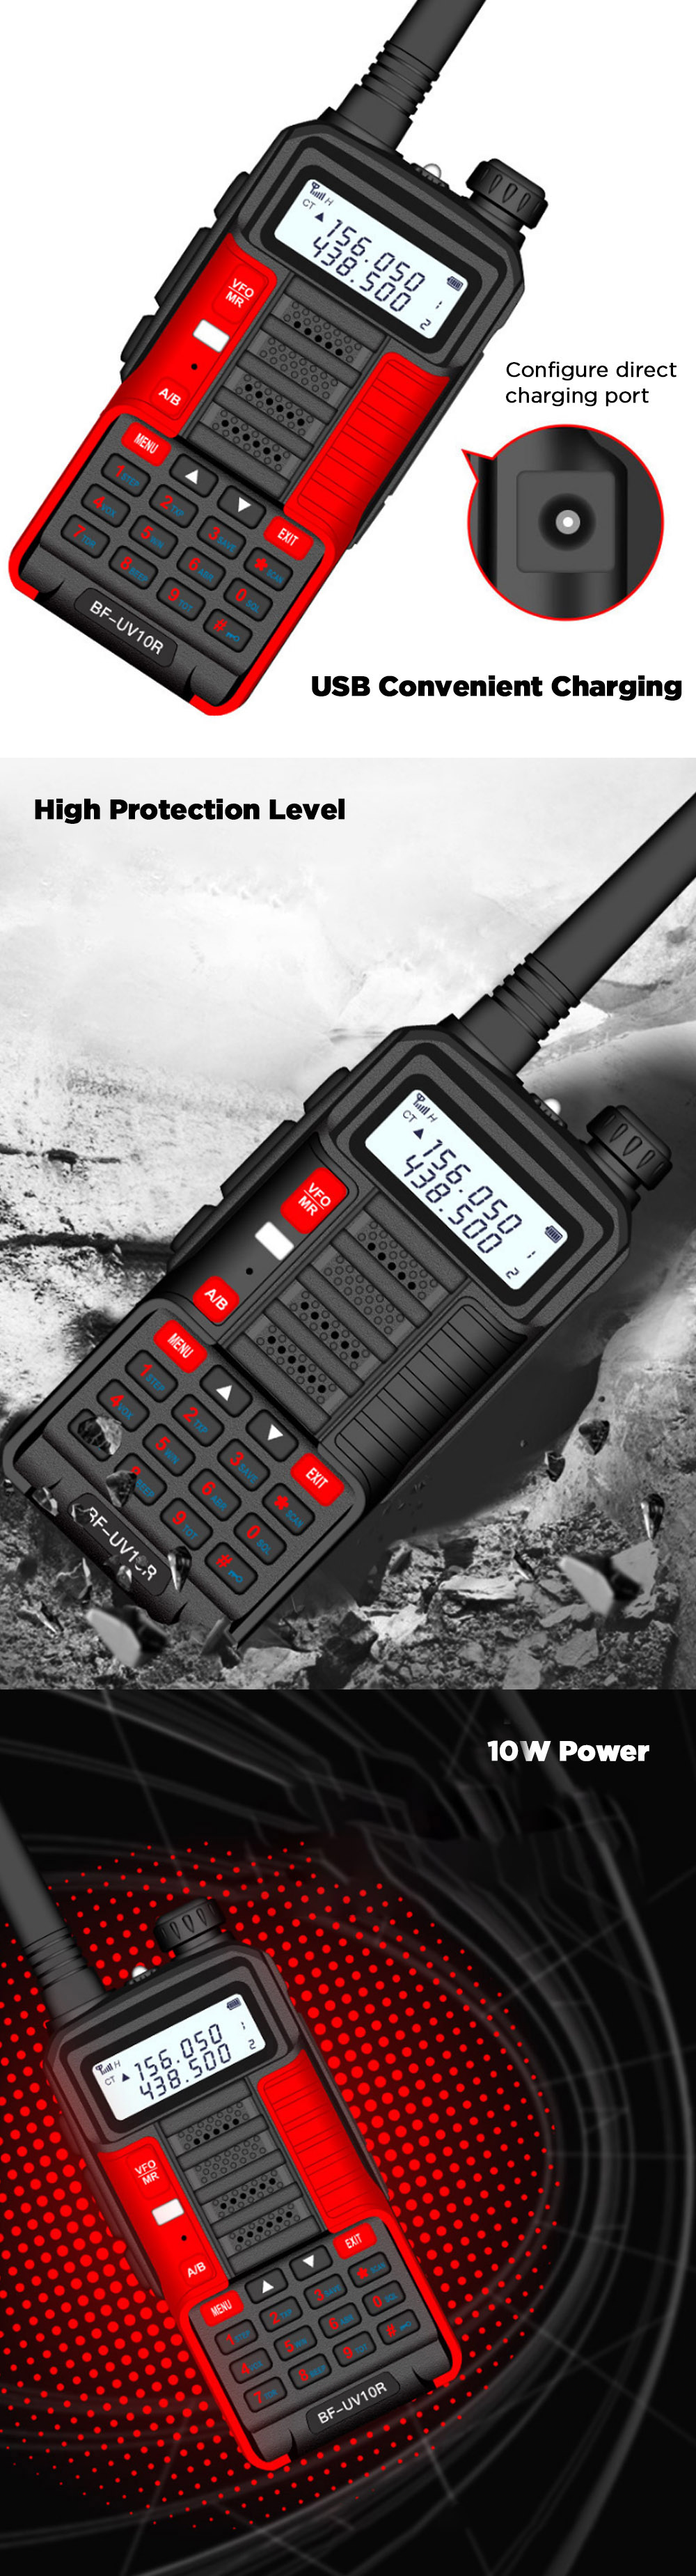 BAOFENG-BF-UV10R-Plus-10W-4800mAh-UV-Dual-Band-Two-way-Handheld-Radio-Black-Walkie-Talkie-128-Channe-1753474-2